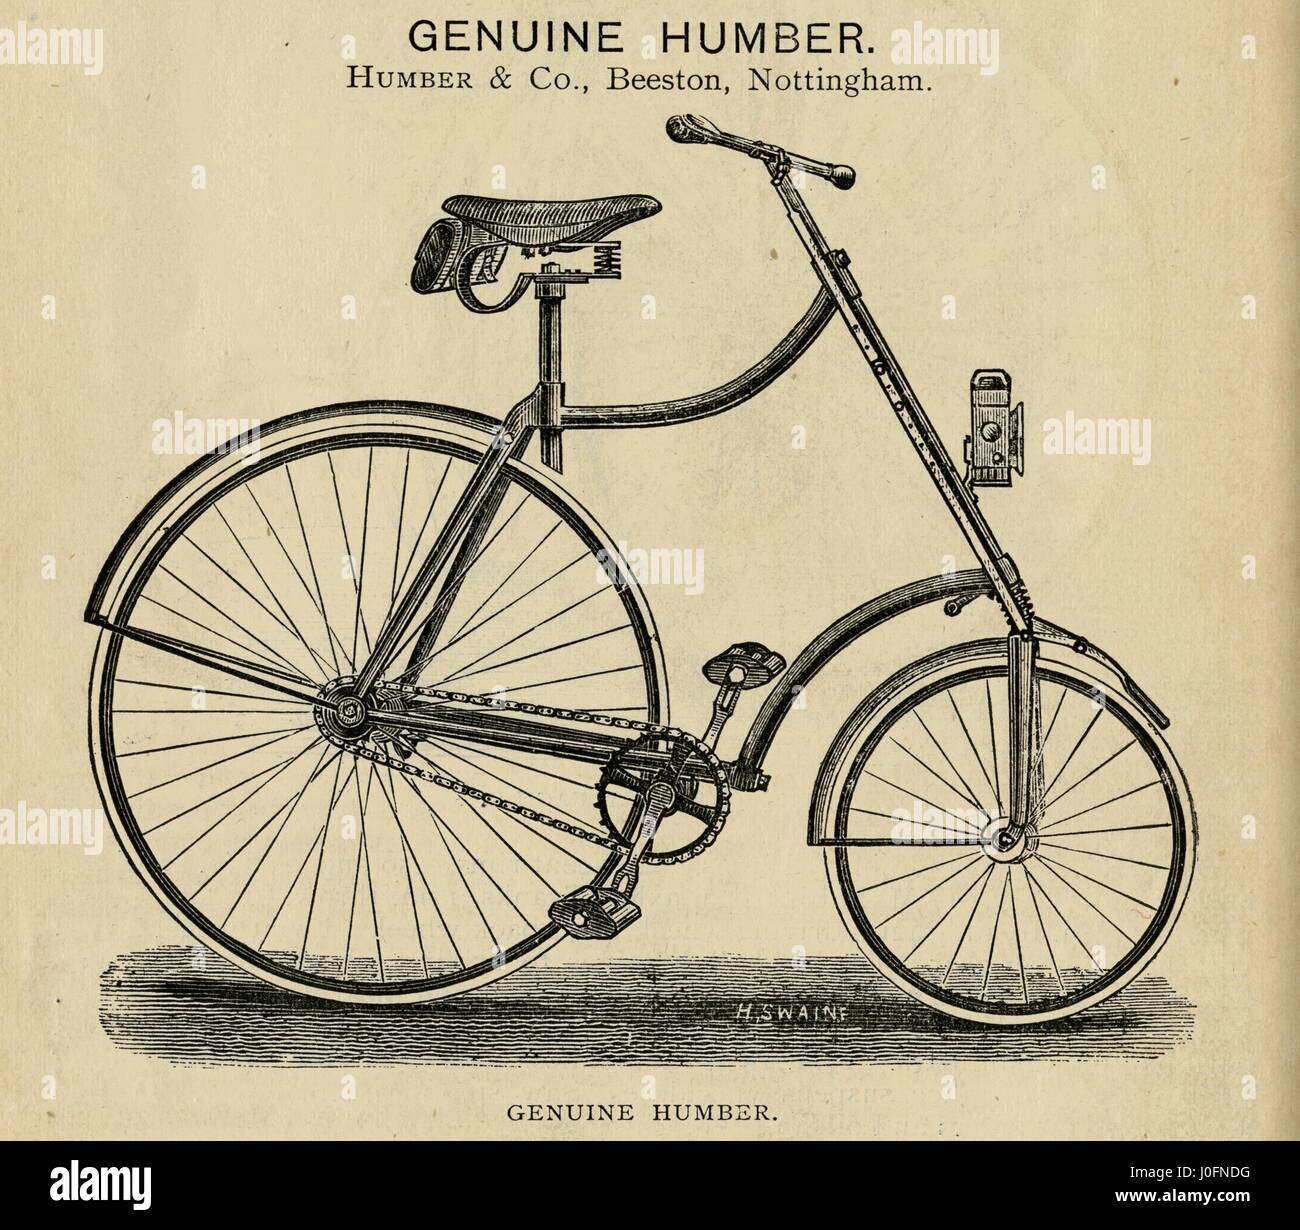 Auténtica bicicleta por Humber Humber y Co. de Nottingham Foto de stock